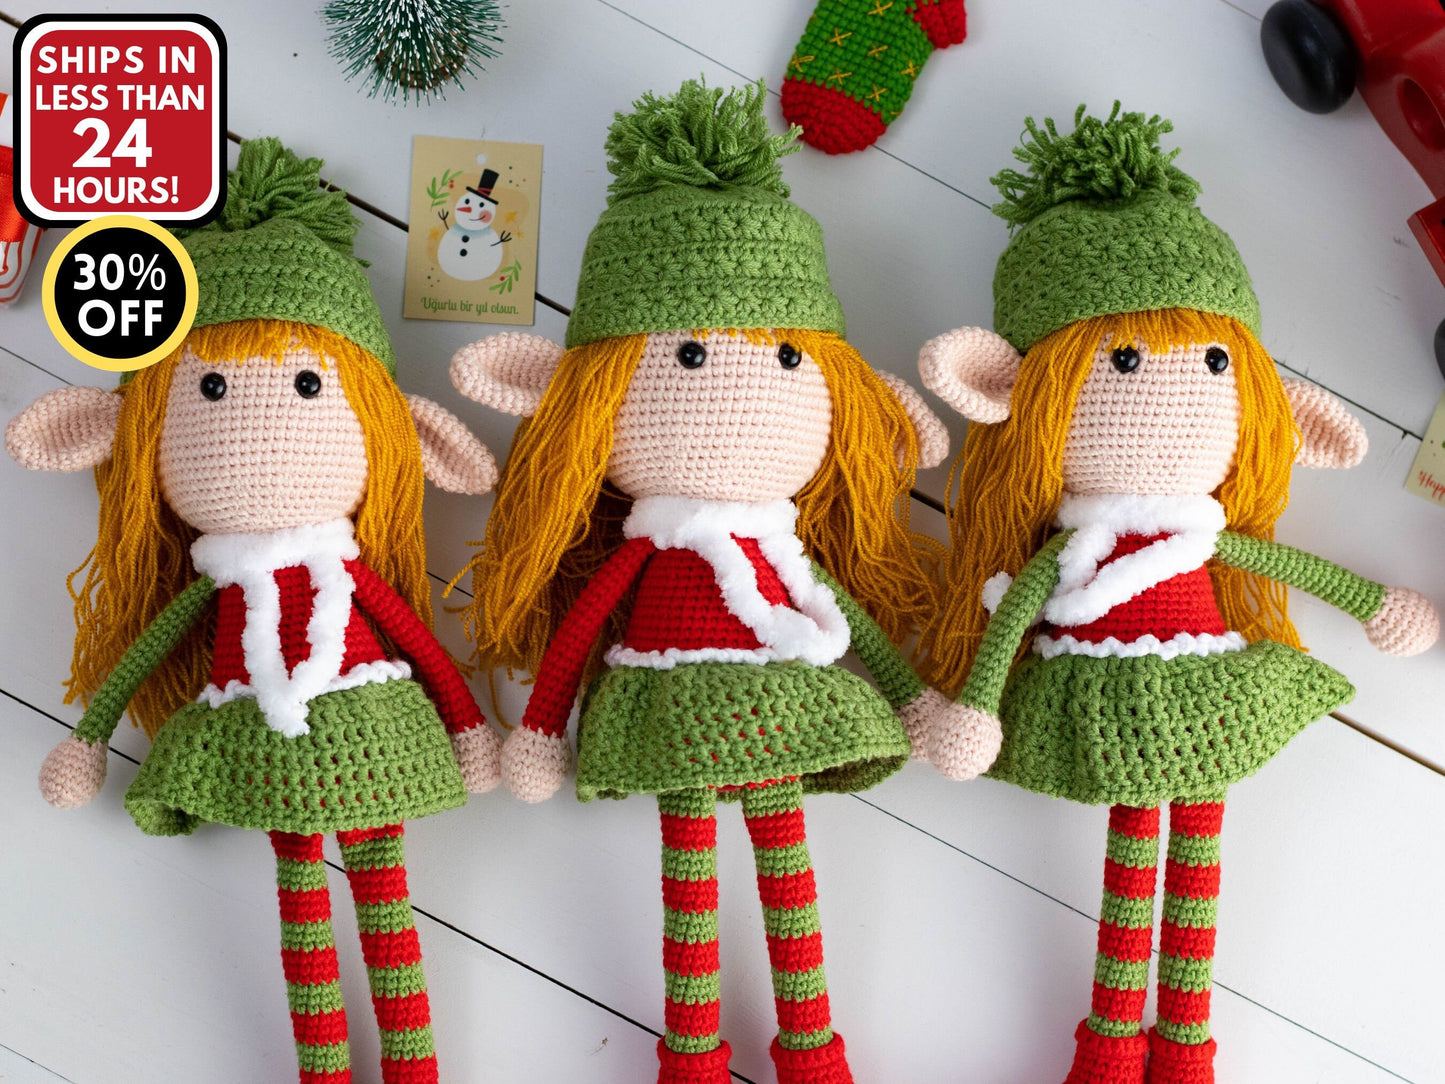 Elf Doll Girl, Crochet Elf, Christmas Girl Elf Dolls, Elven Crochet, Stuffed Elf Plush Doll, Christmas Elves Soft, Grand Daughter Son Gift